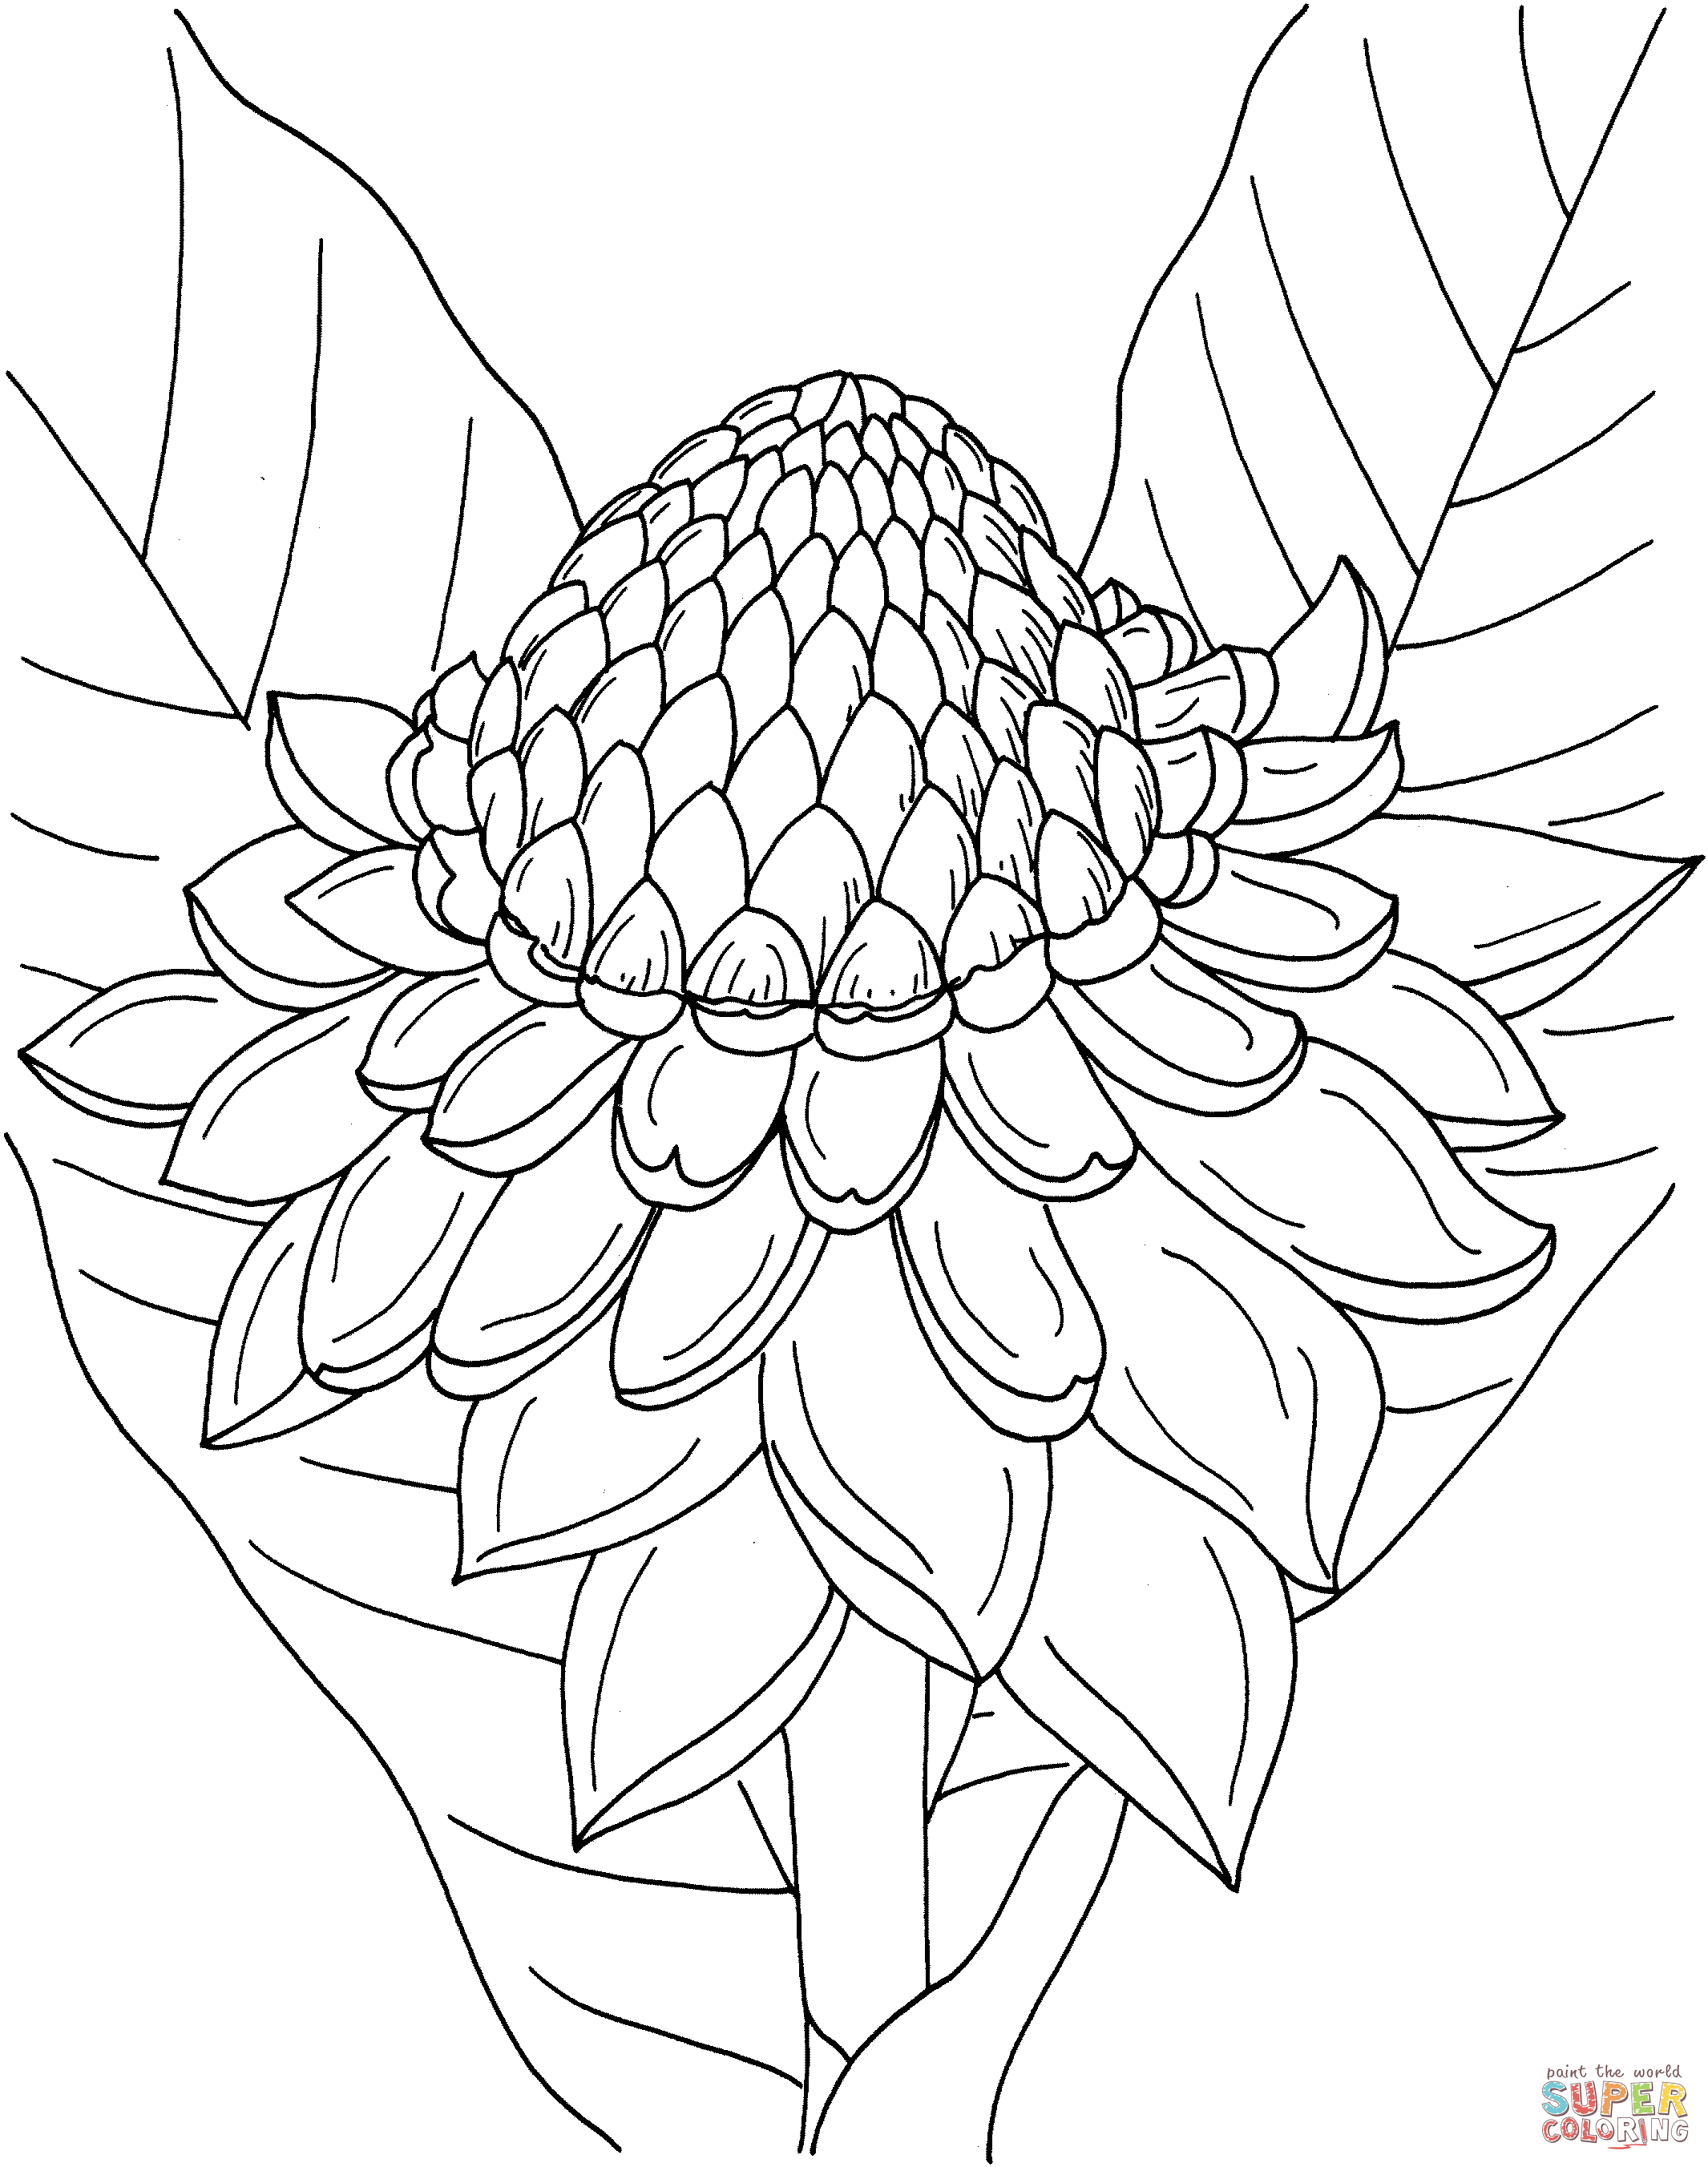 Etlingera Elatior или Факел-Имбирь из Цветка Имбиря